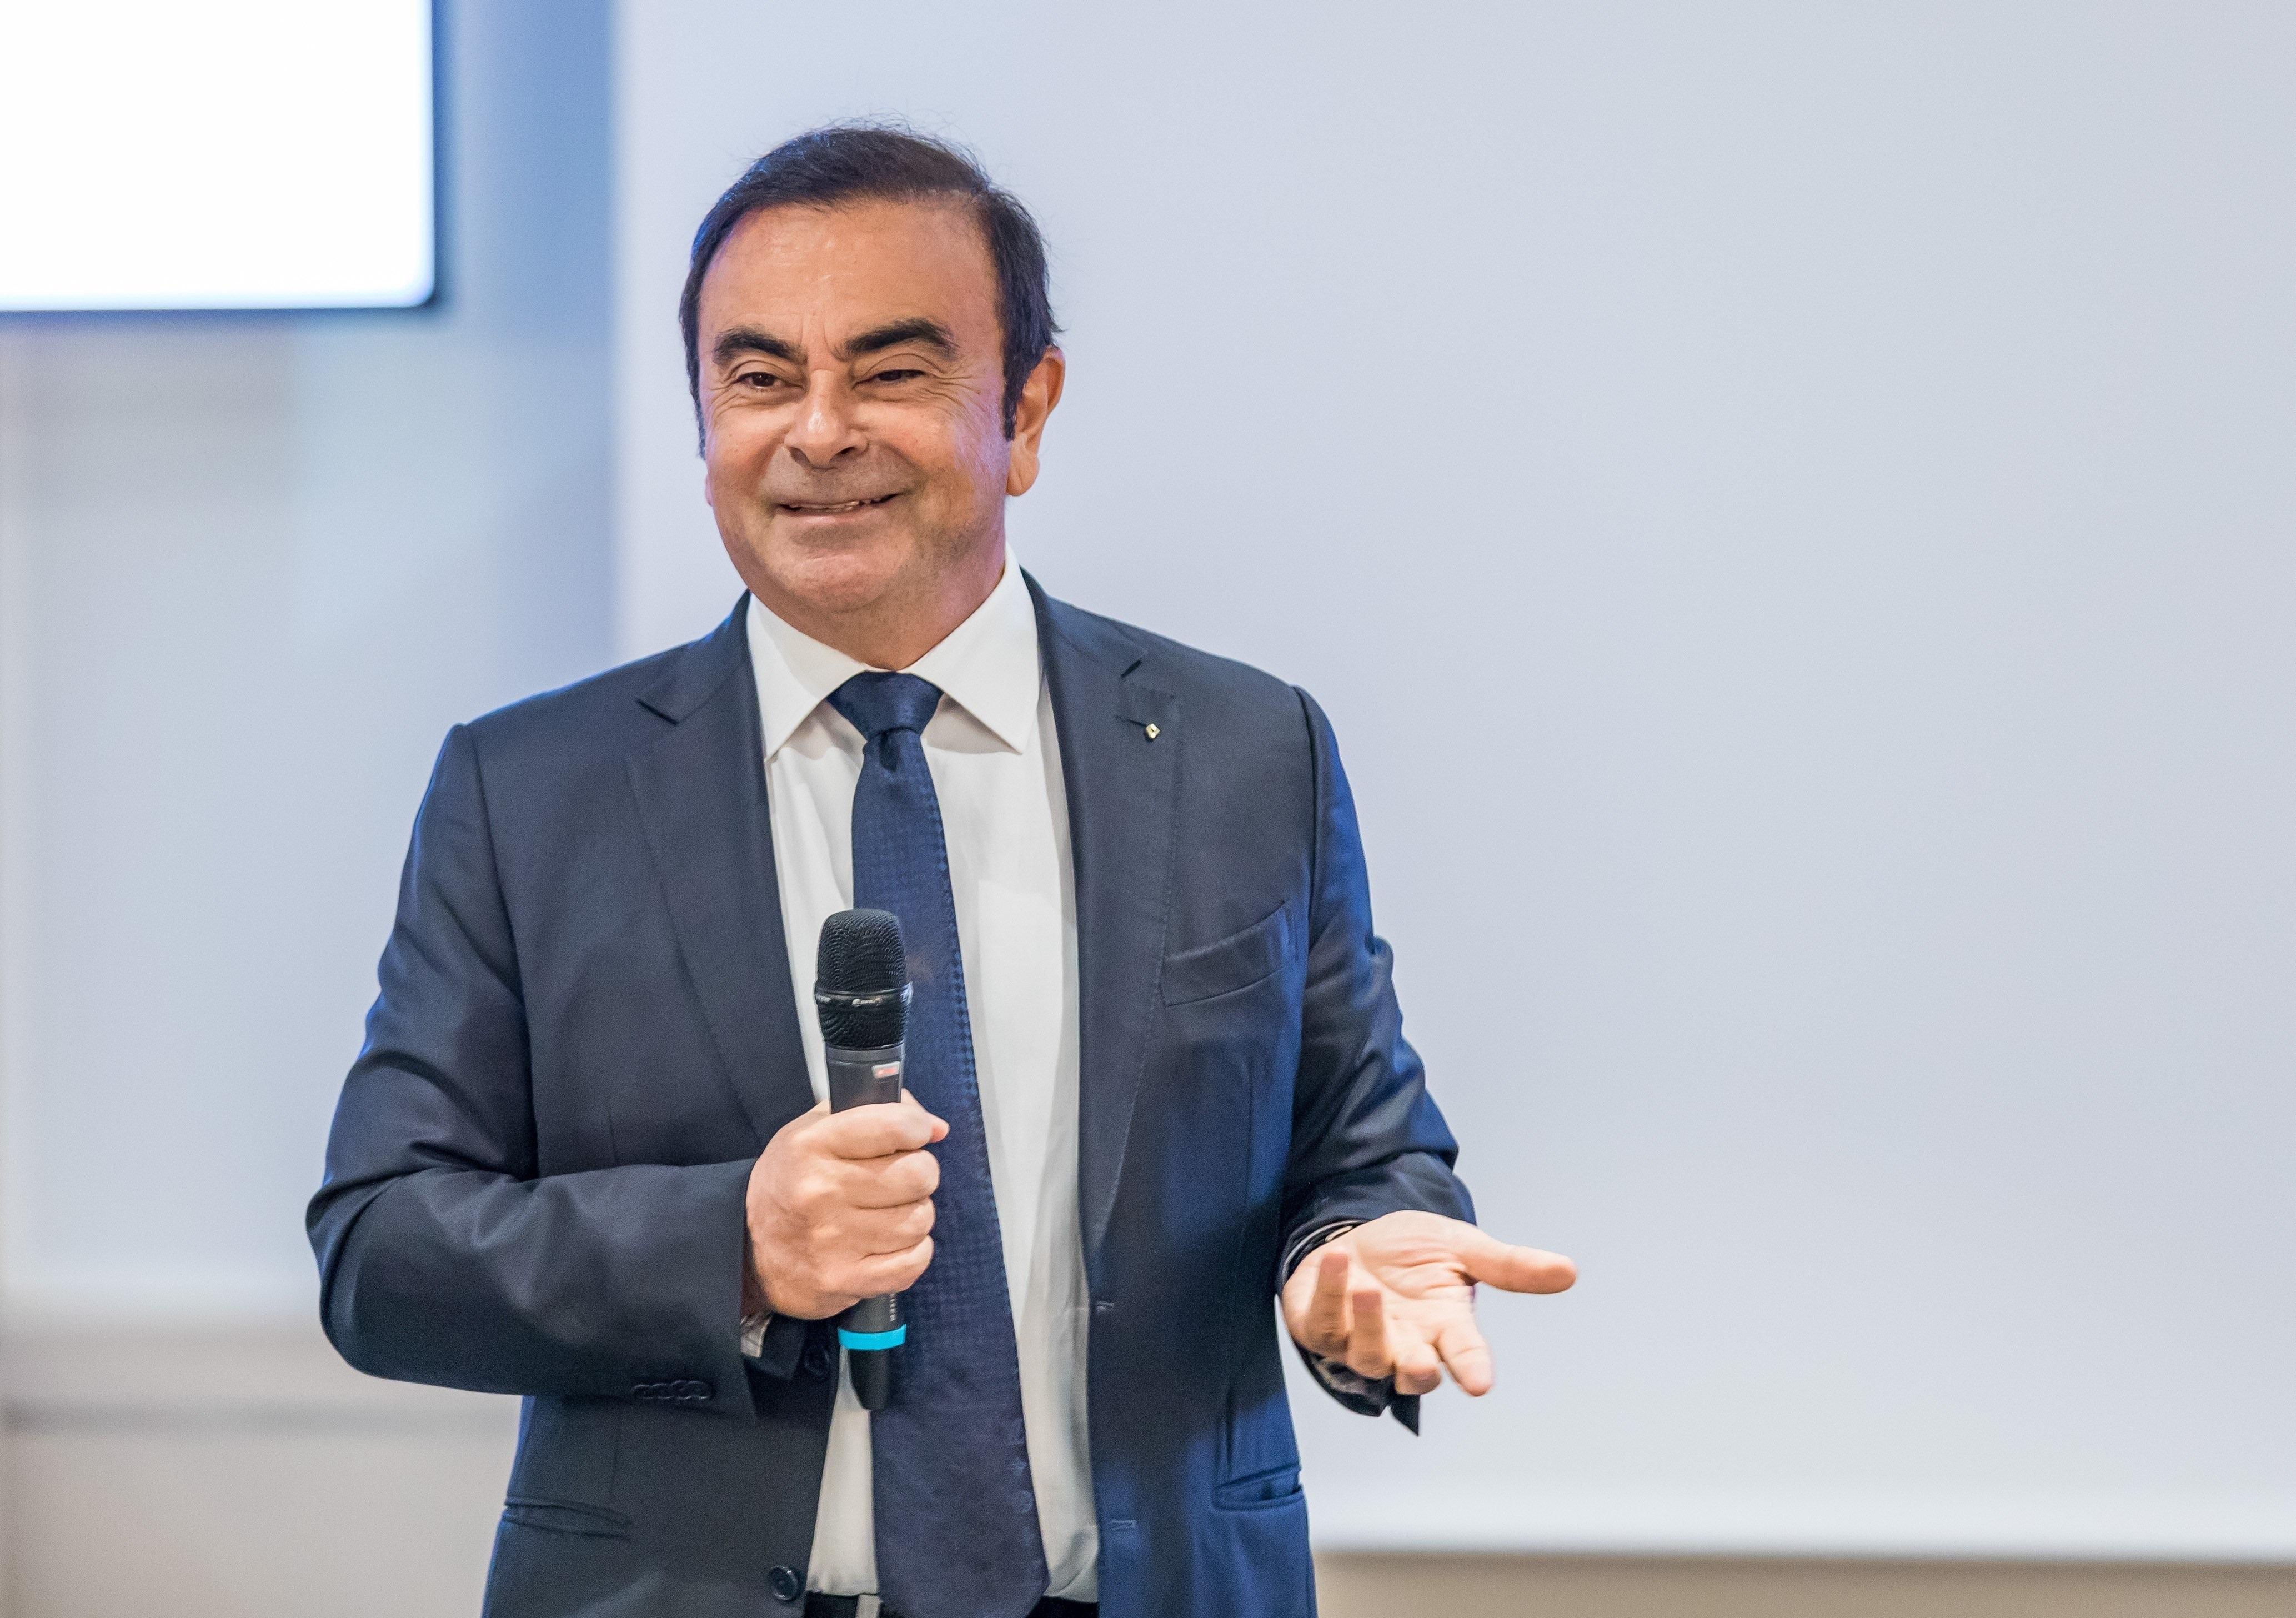 Carlos Ghosn en una imagen de archivo durante una presentación de Nissan - EP